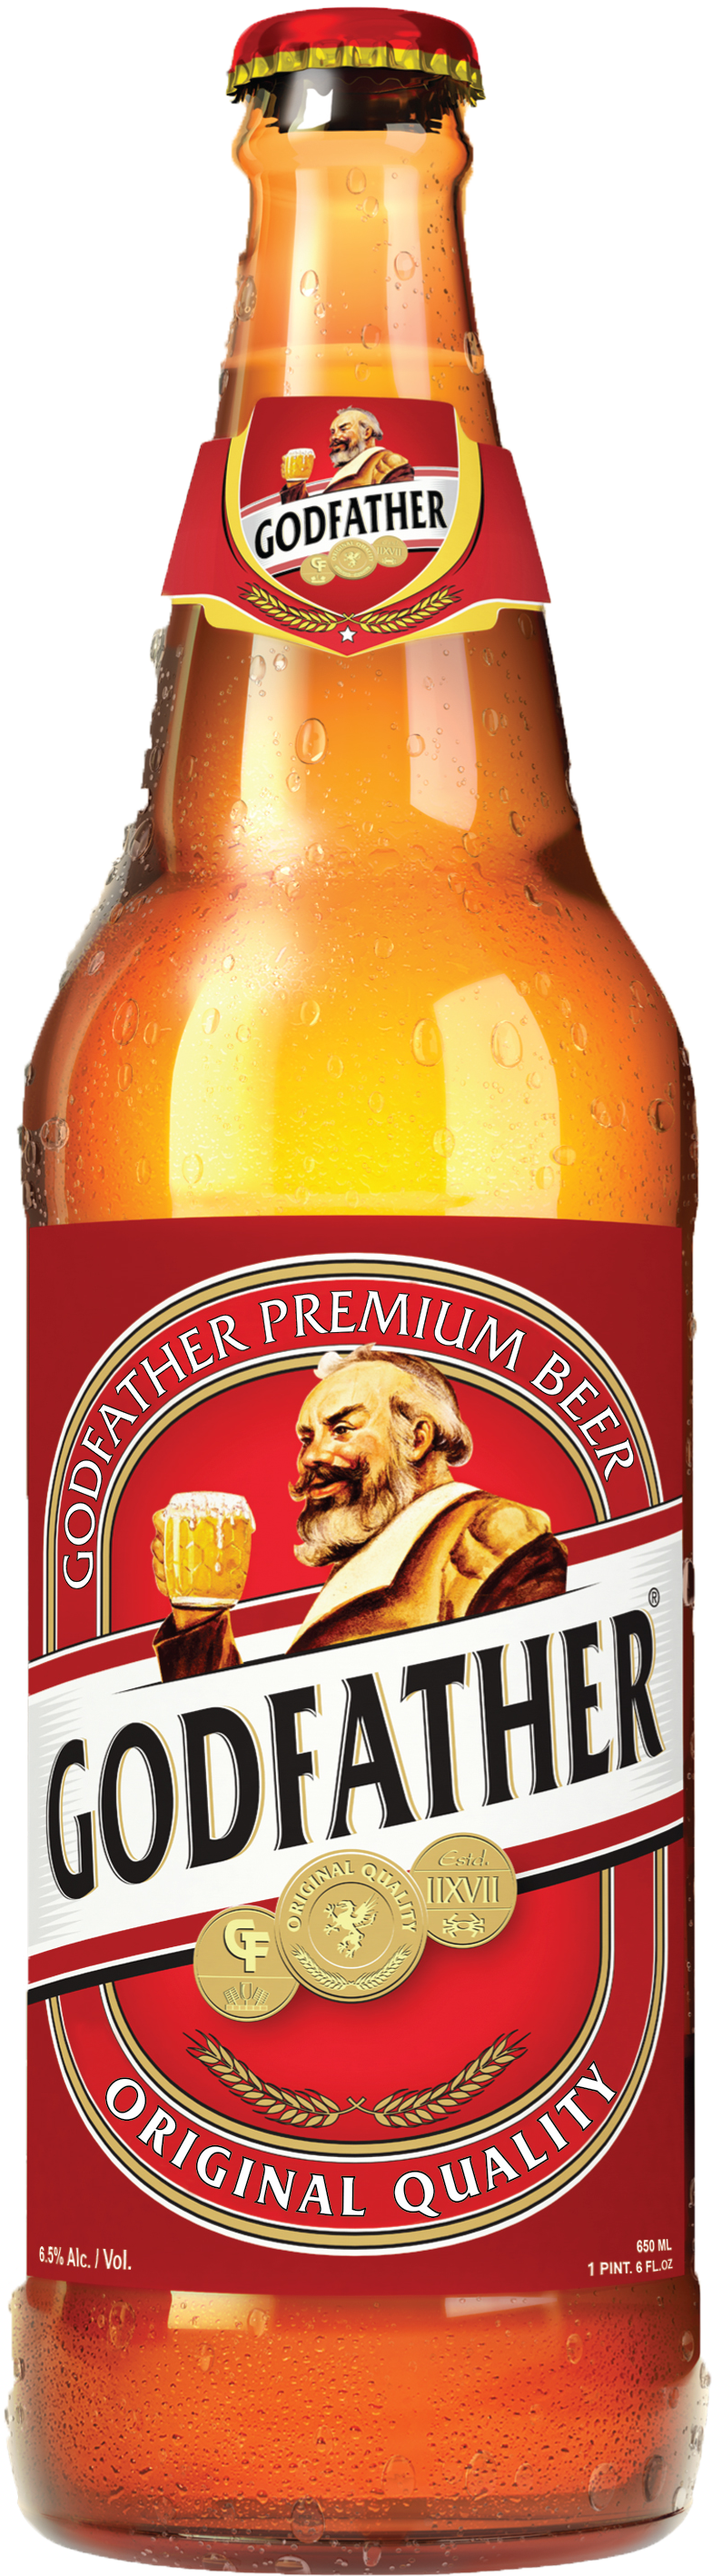 Godfather Premium Beer Bottle